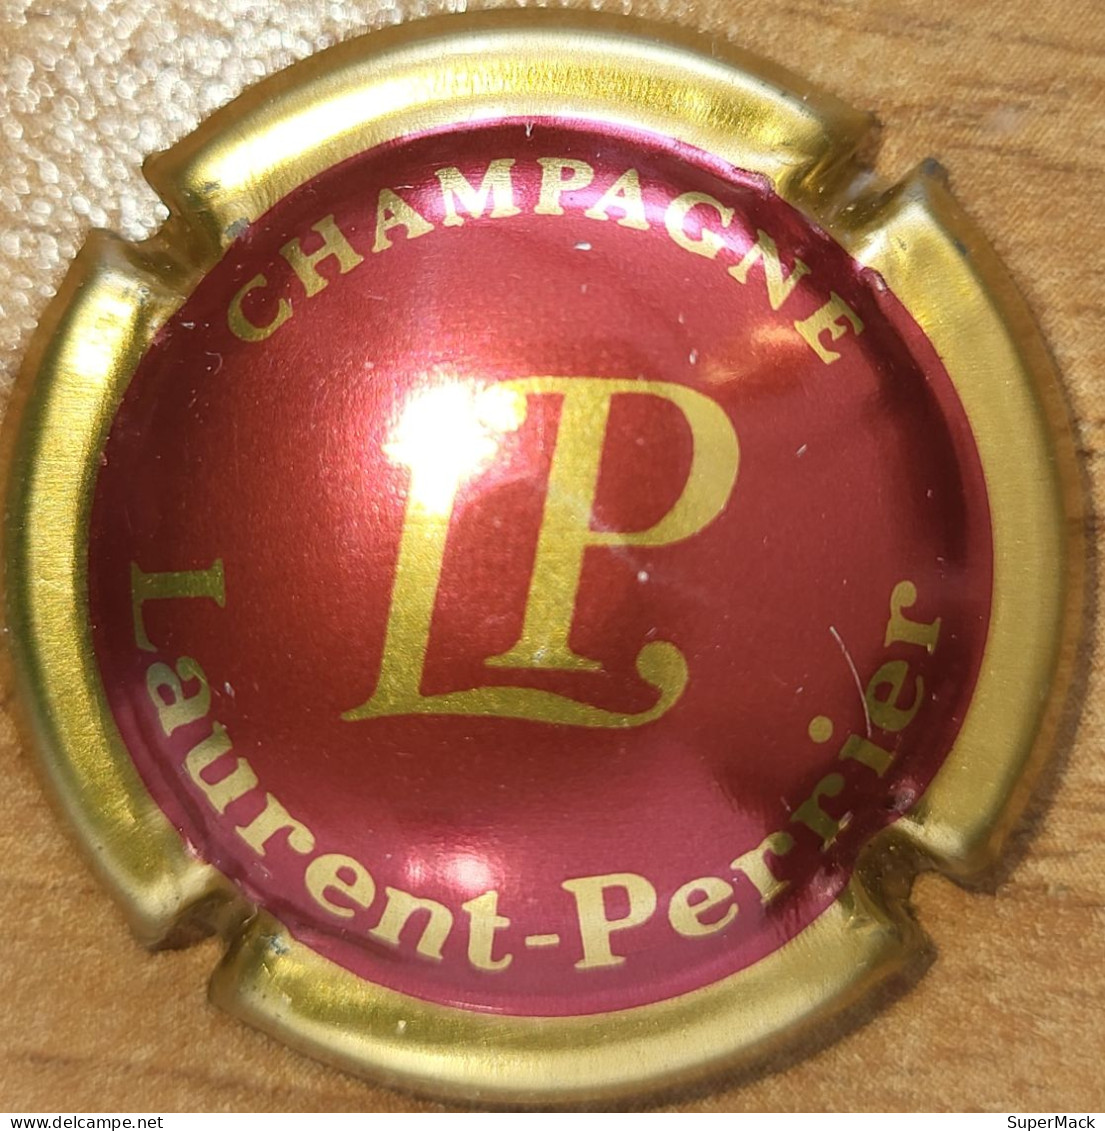 Capsule Champagne LAURENT-PERRIER Série Initiales épaisses, Nom Circulaire, Bordeau Clair & Or N°39 - Laurent-Perrier